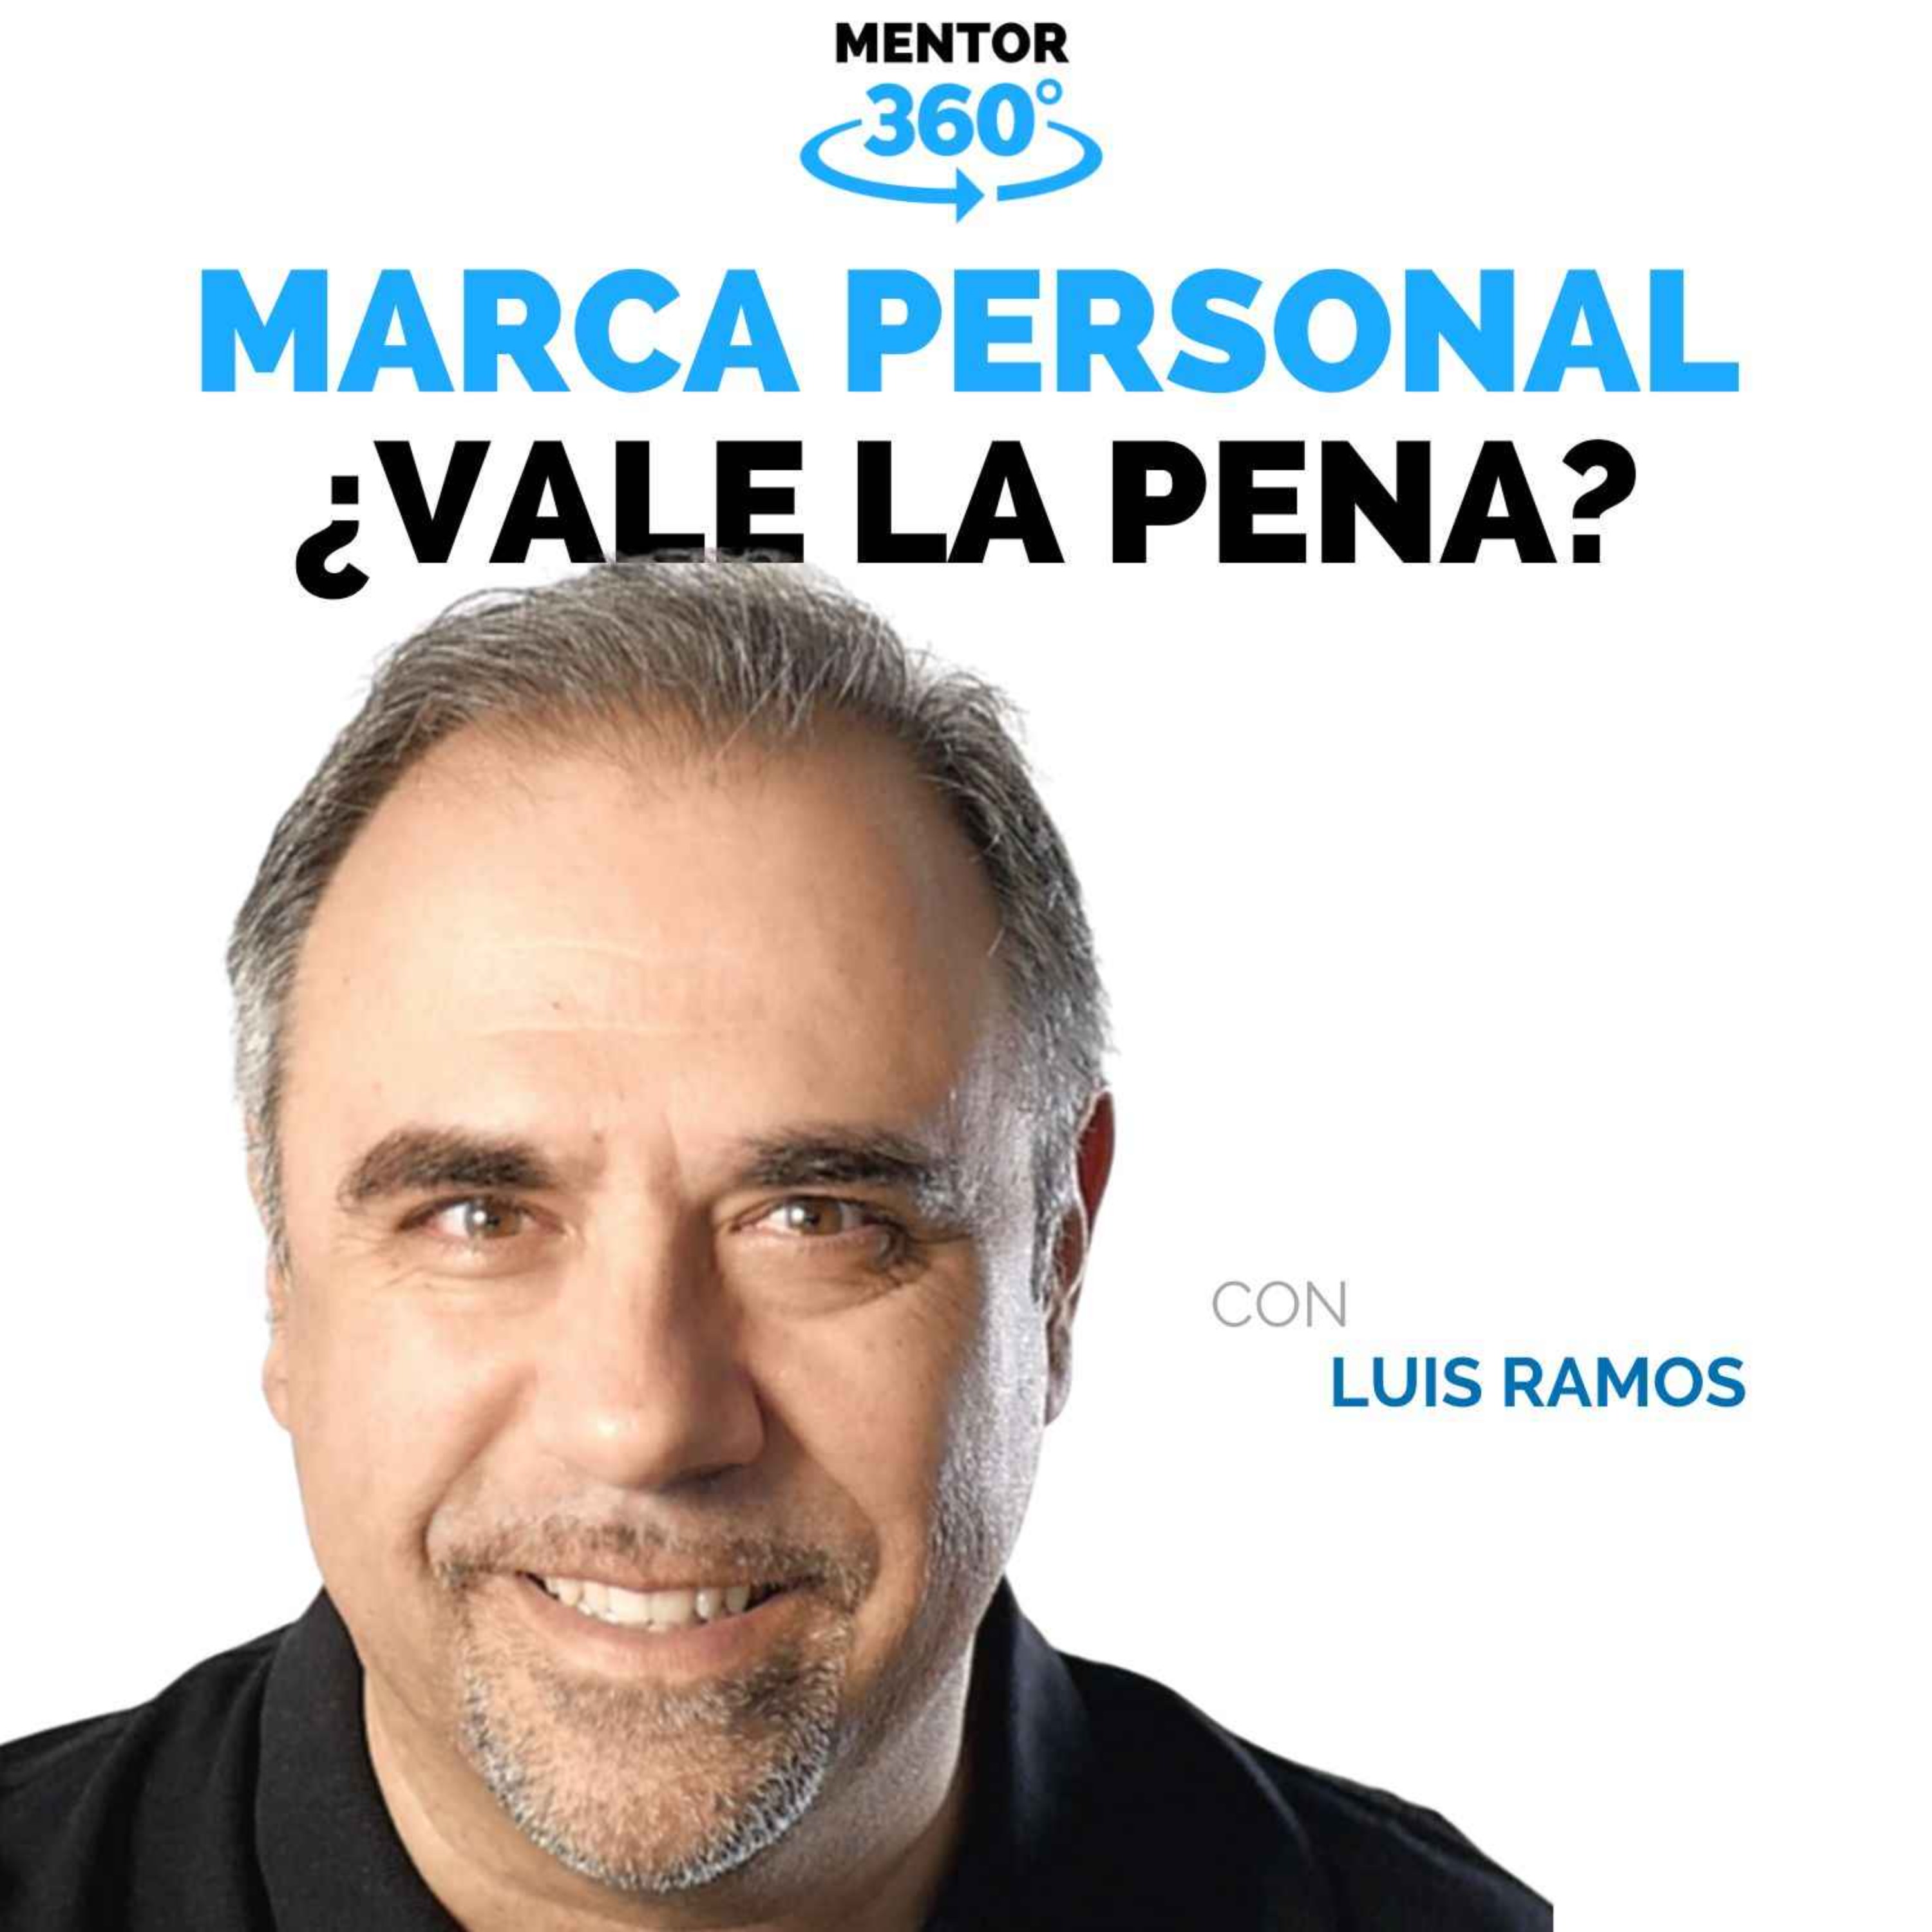 ¿Vale la Pena construir una Marca Personal? - Luis Ramos - Marca Personal - MENTOR360